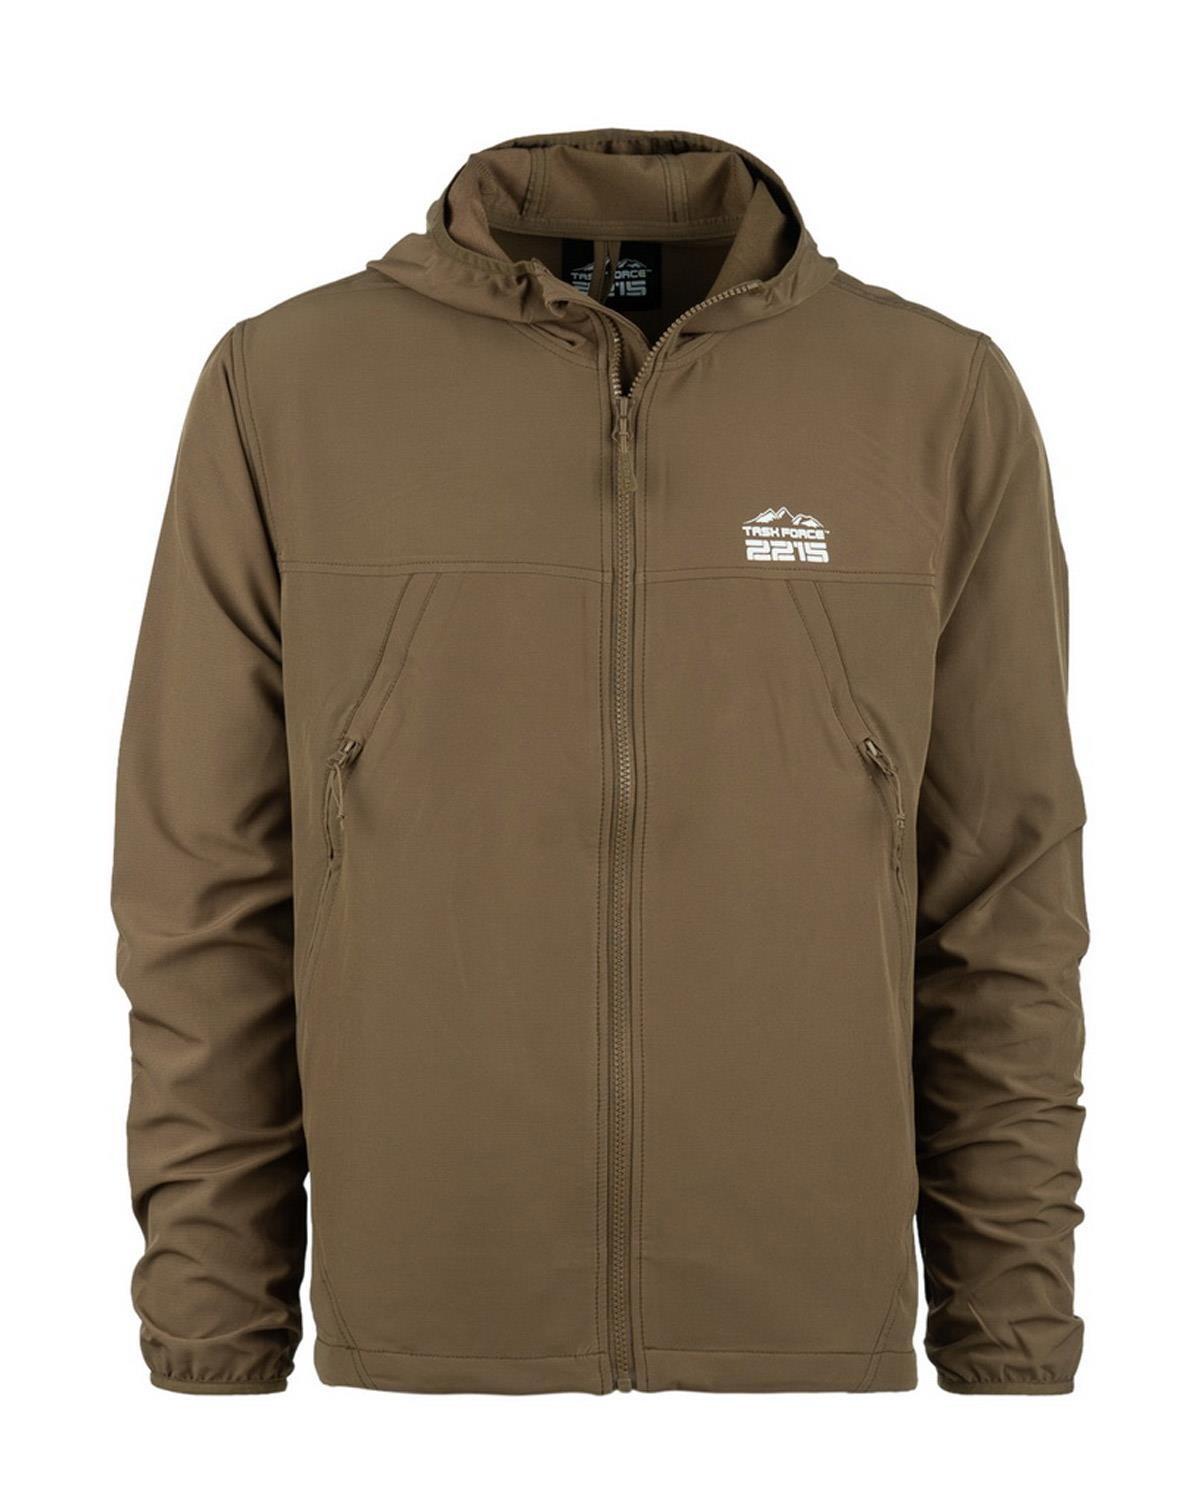 Fostex Trail Softshell Jacket (Coyote Brun, XL)